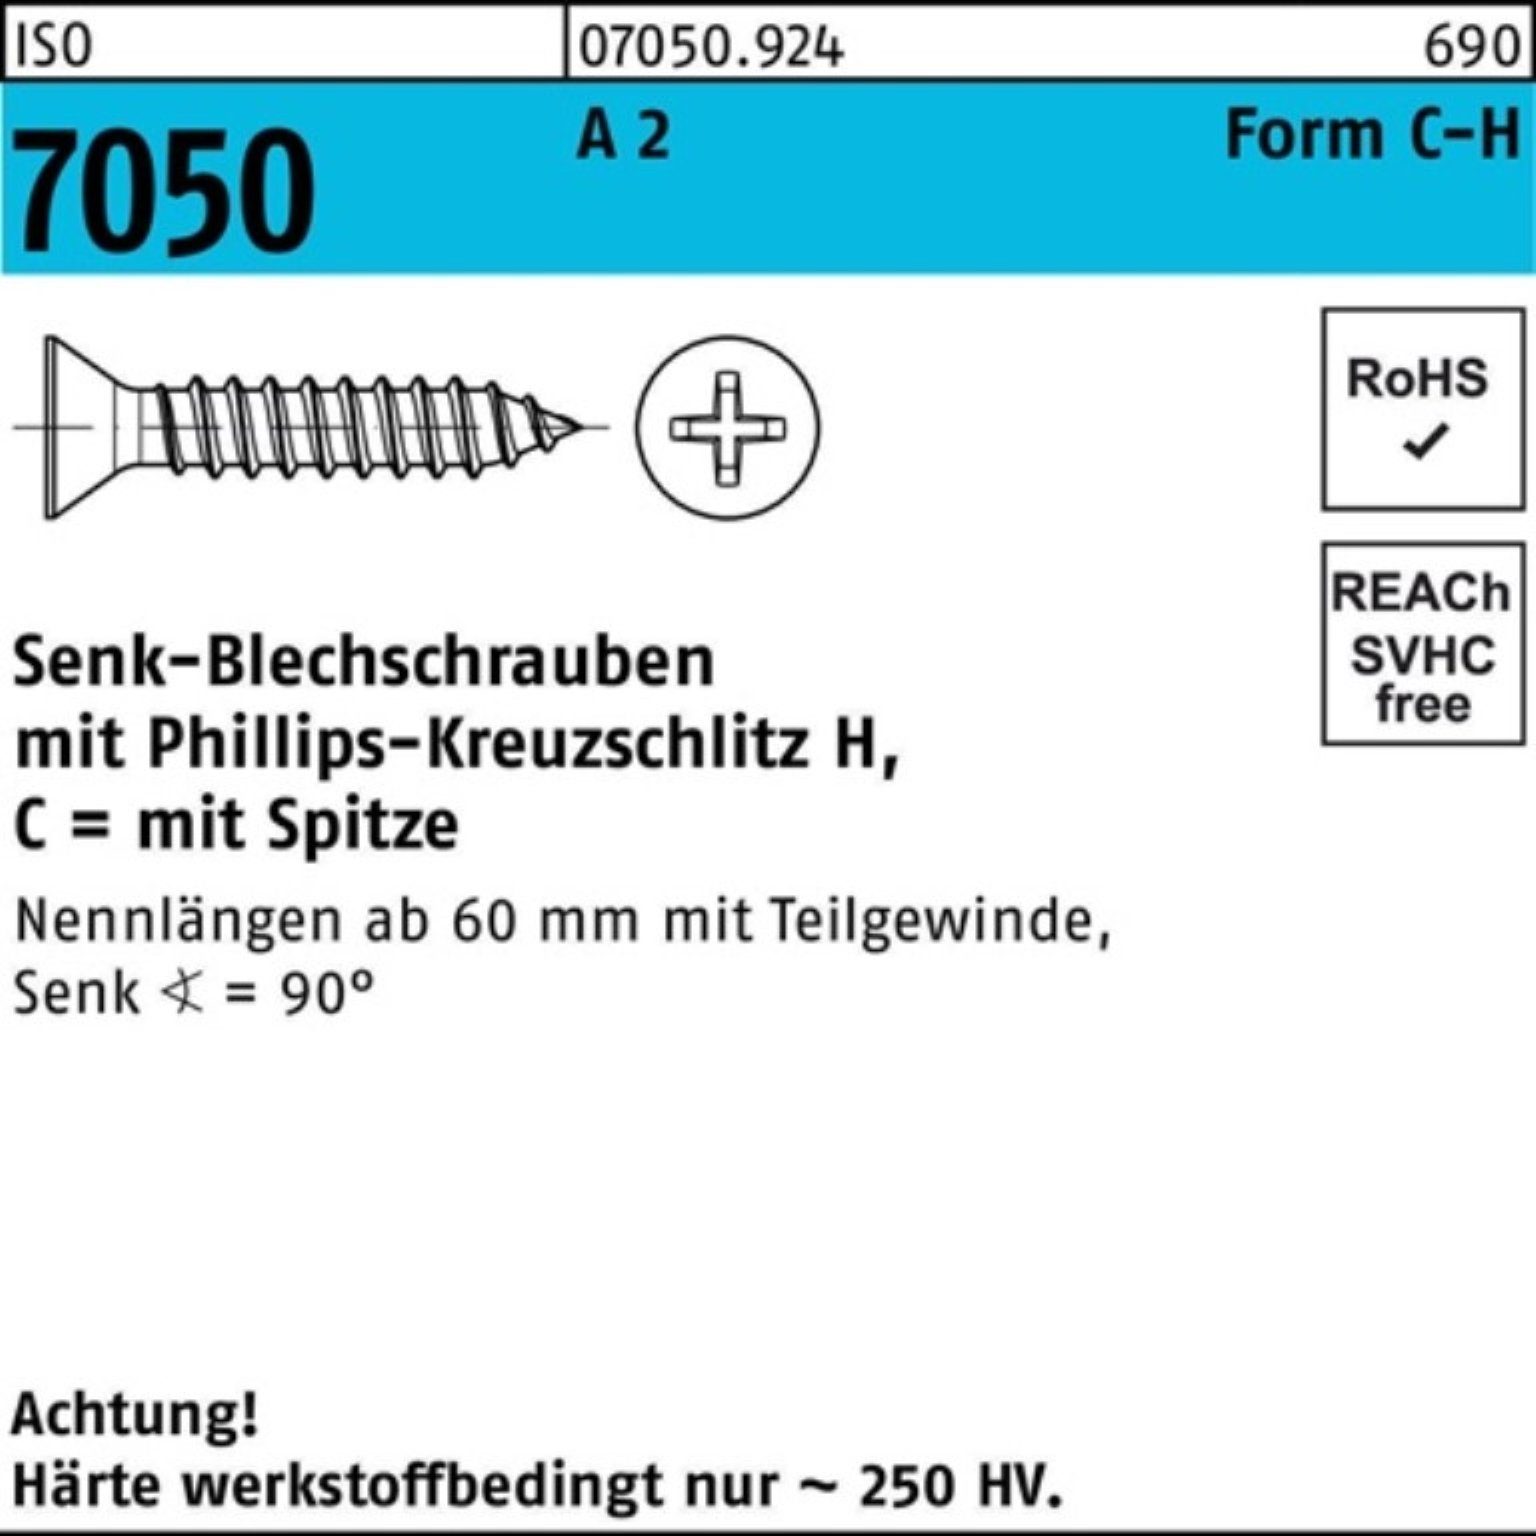 4,2x 500 Spitze/PH -C-H SEKO 38 Blechschraube Blechschraube A Reyher Pack 2 7050 500er ISO